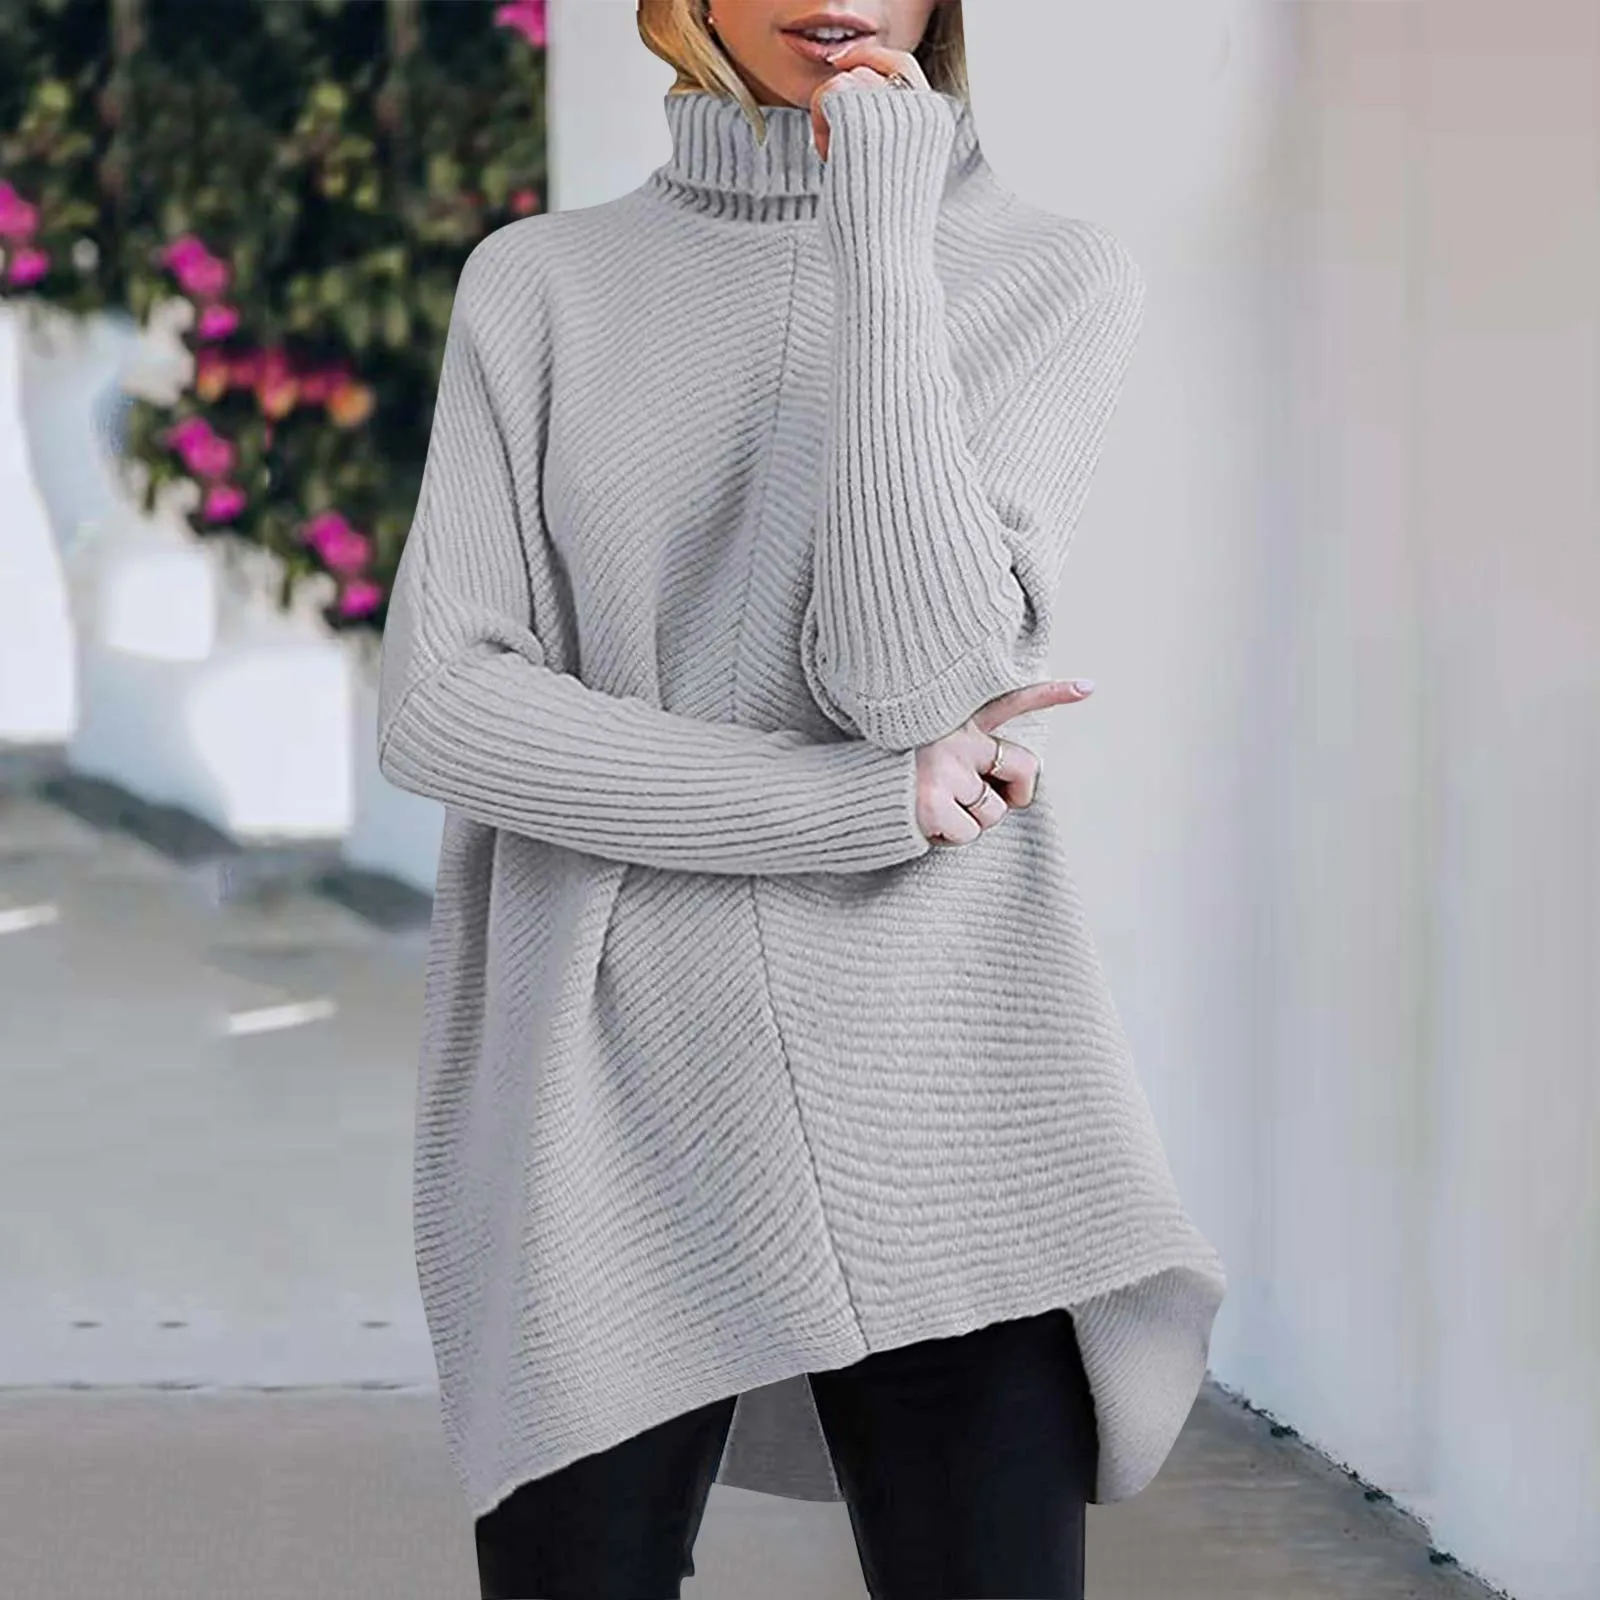 

Women Turtleneck Long Sweater Batwing Sleeve Asymmetric Hem Casual Pullover Fashion Solid Warm Sweater Knit Tops Sweatshirt